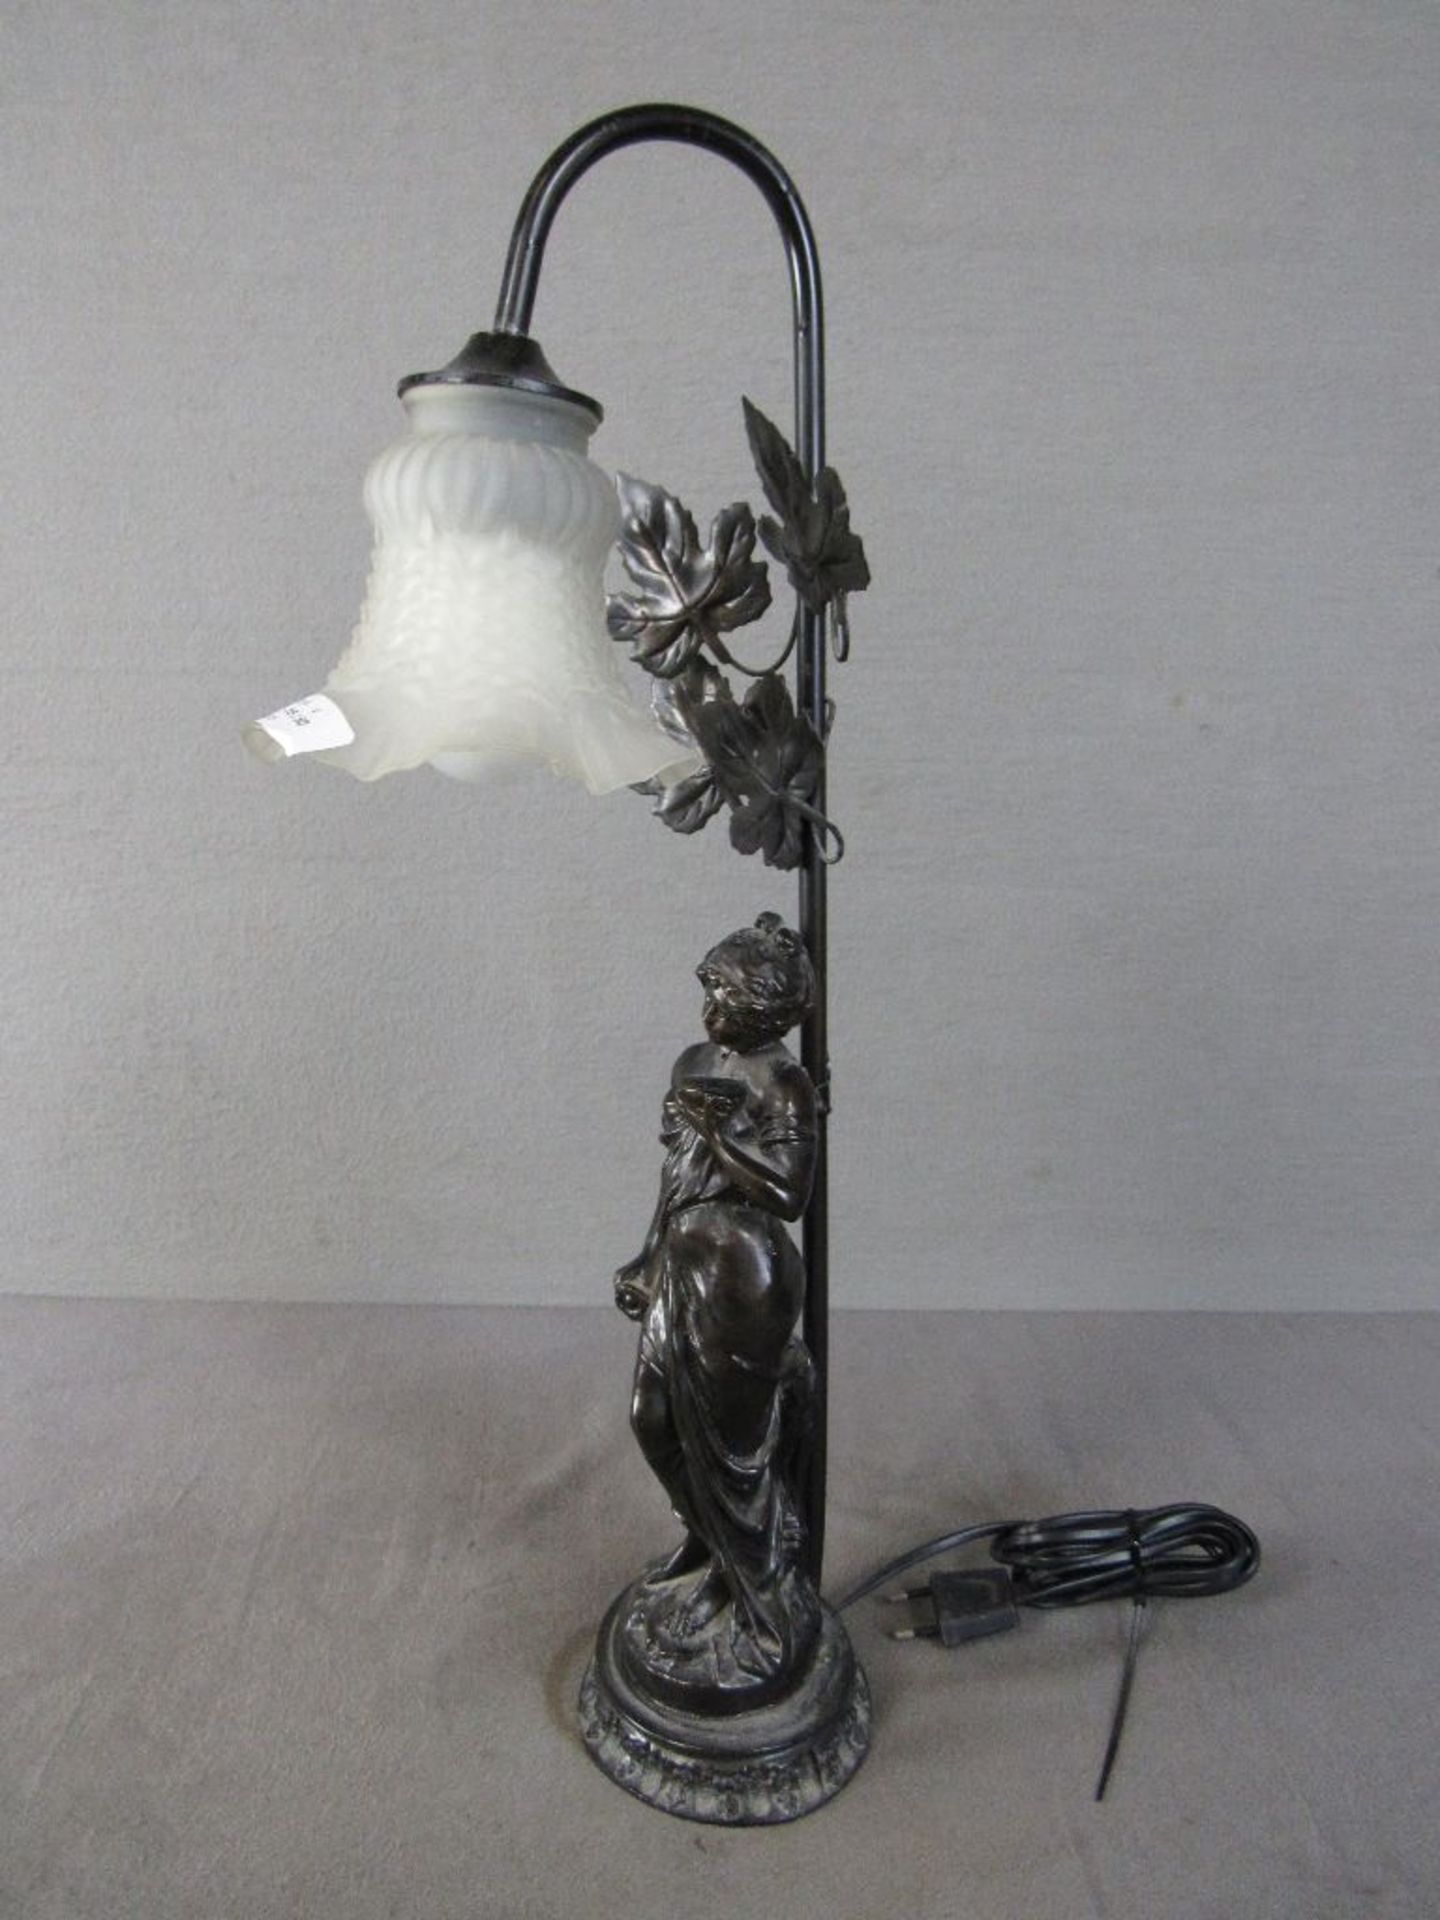 Tischlampe in schöner Jugendstilmanier träumende Dame 54cm hoch funktionstüchtig - Image 2 of 5